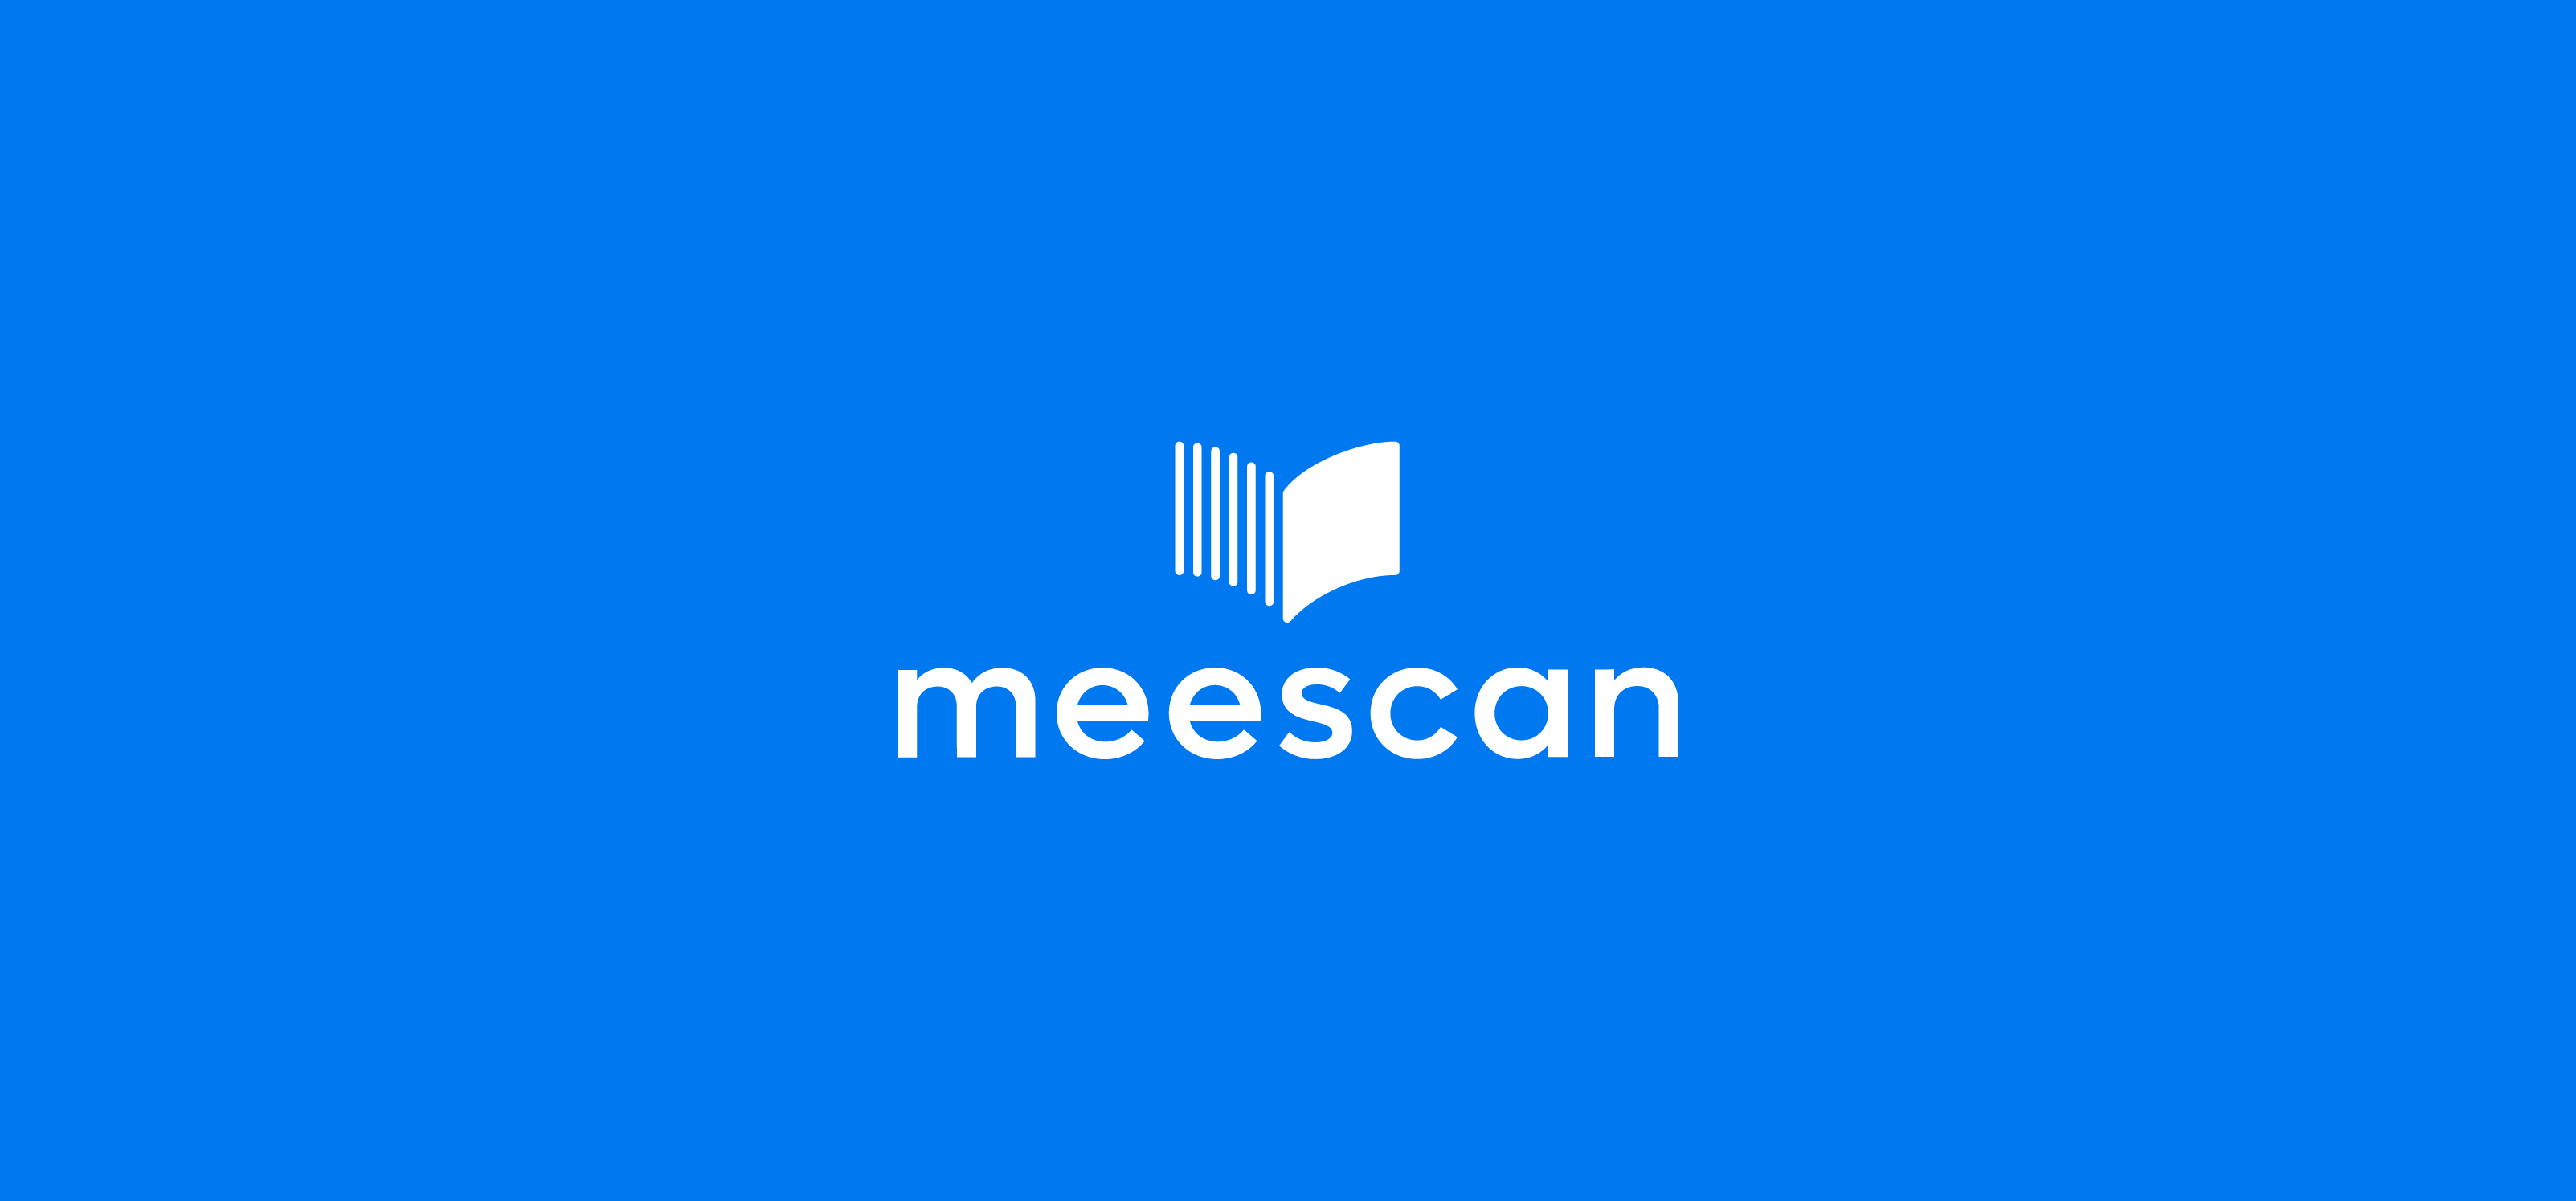 Meescan